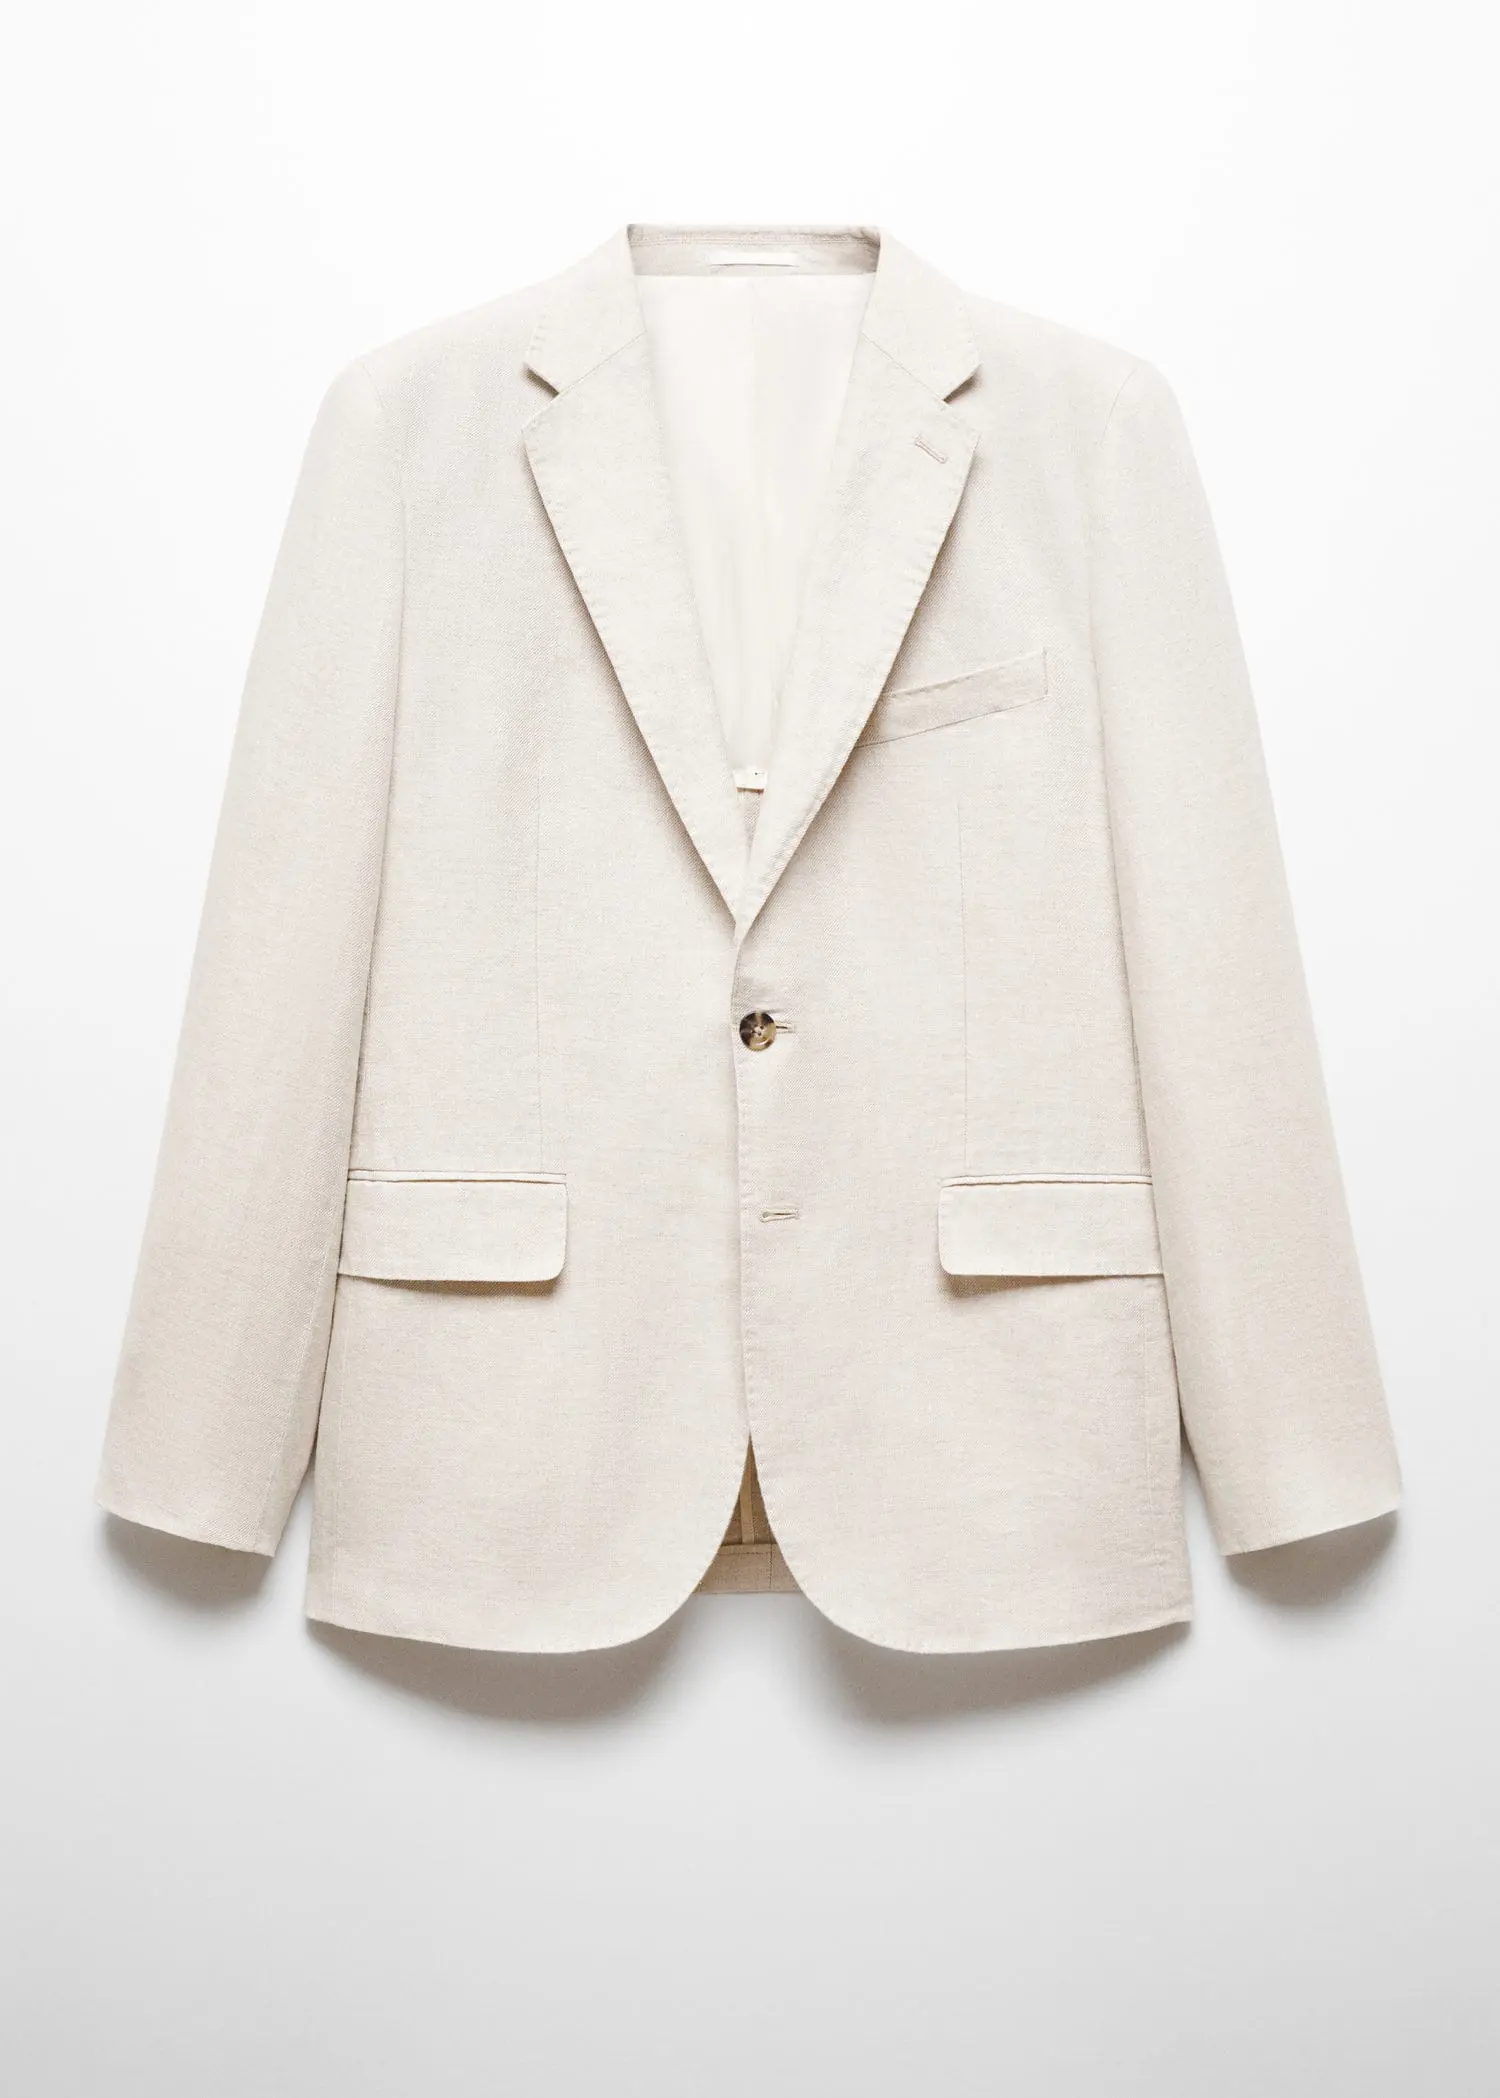 Mango 100% linen slim-fit suit blazer. 1